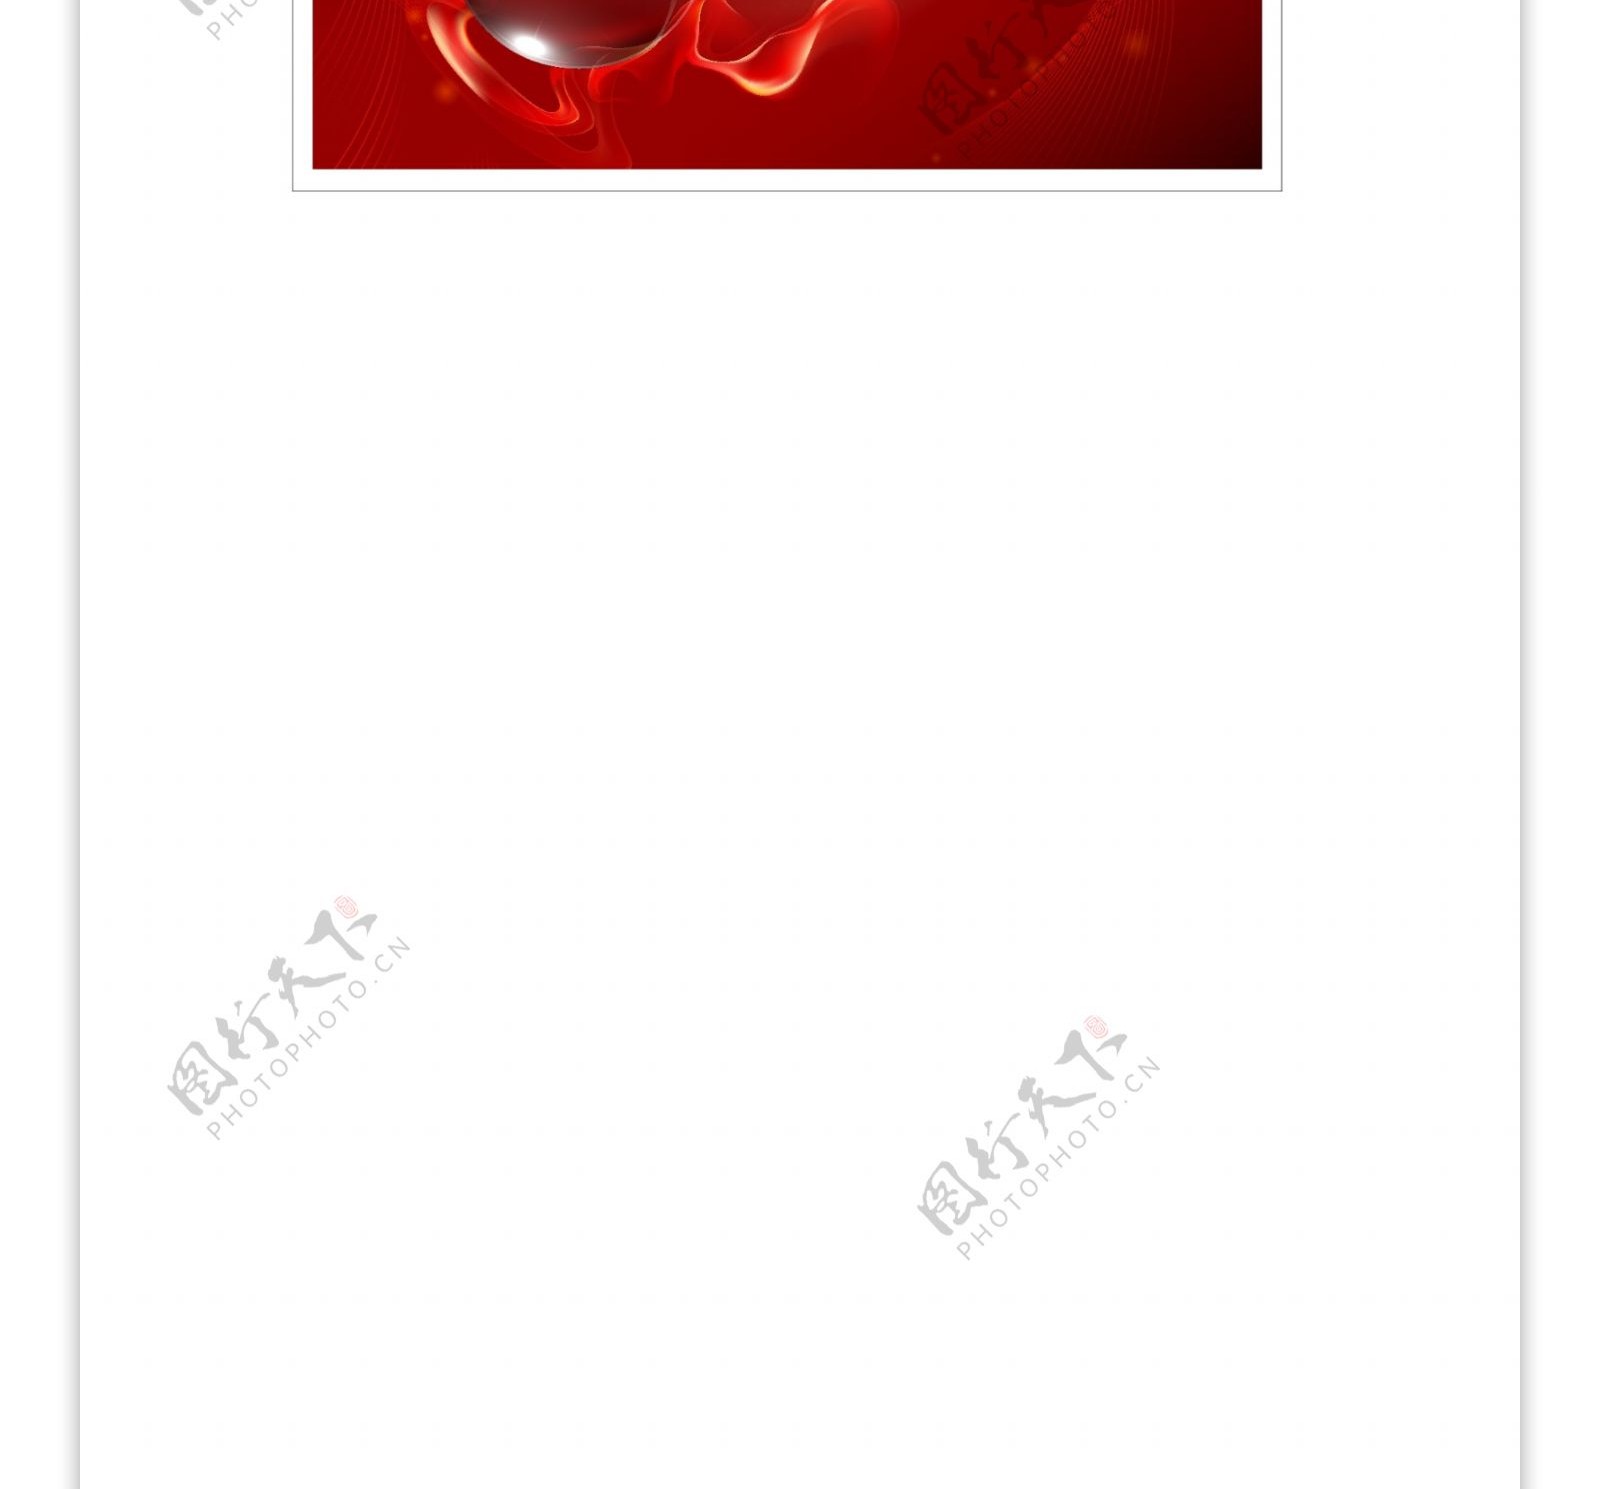 红色质感水晶球与梦幻线条背景矢量素材